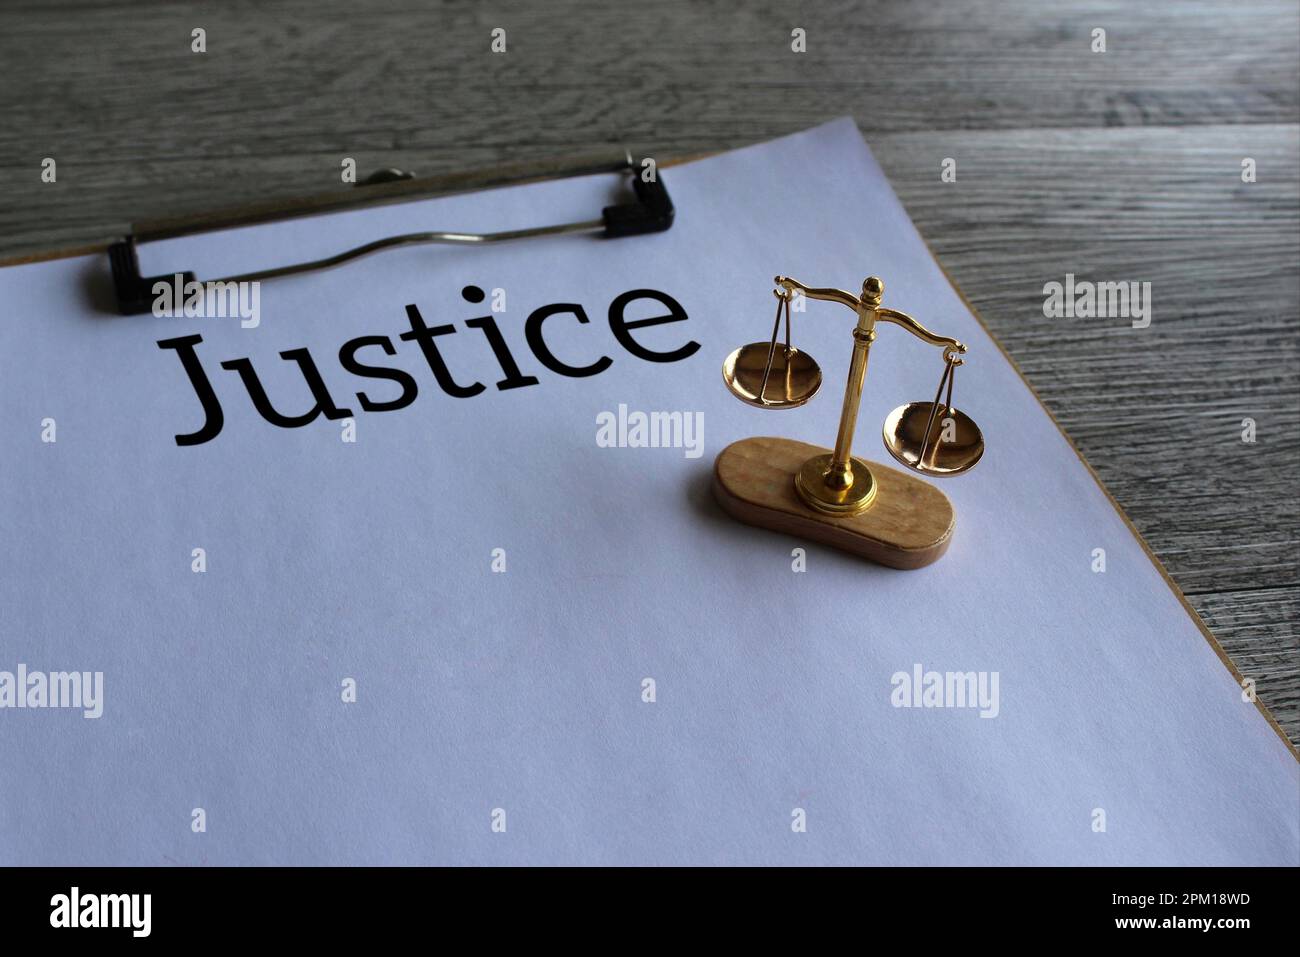 Immagine ravvicinata del bilanciamento della scala e del testo JUSTICE. Diritto giuridico e concetto di giustizia Foto Stock